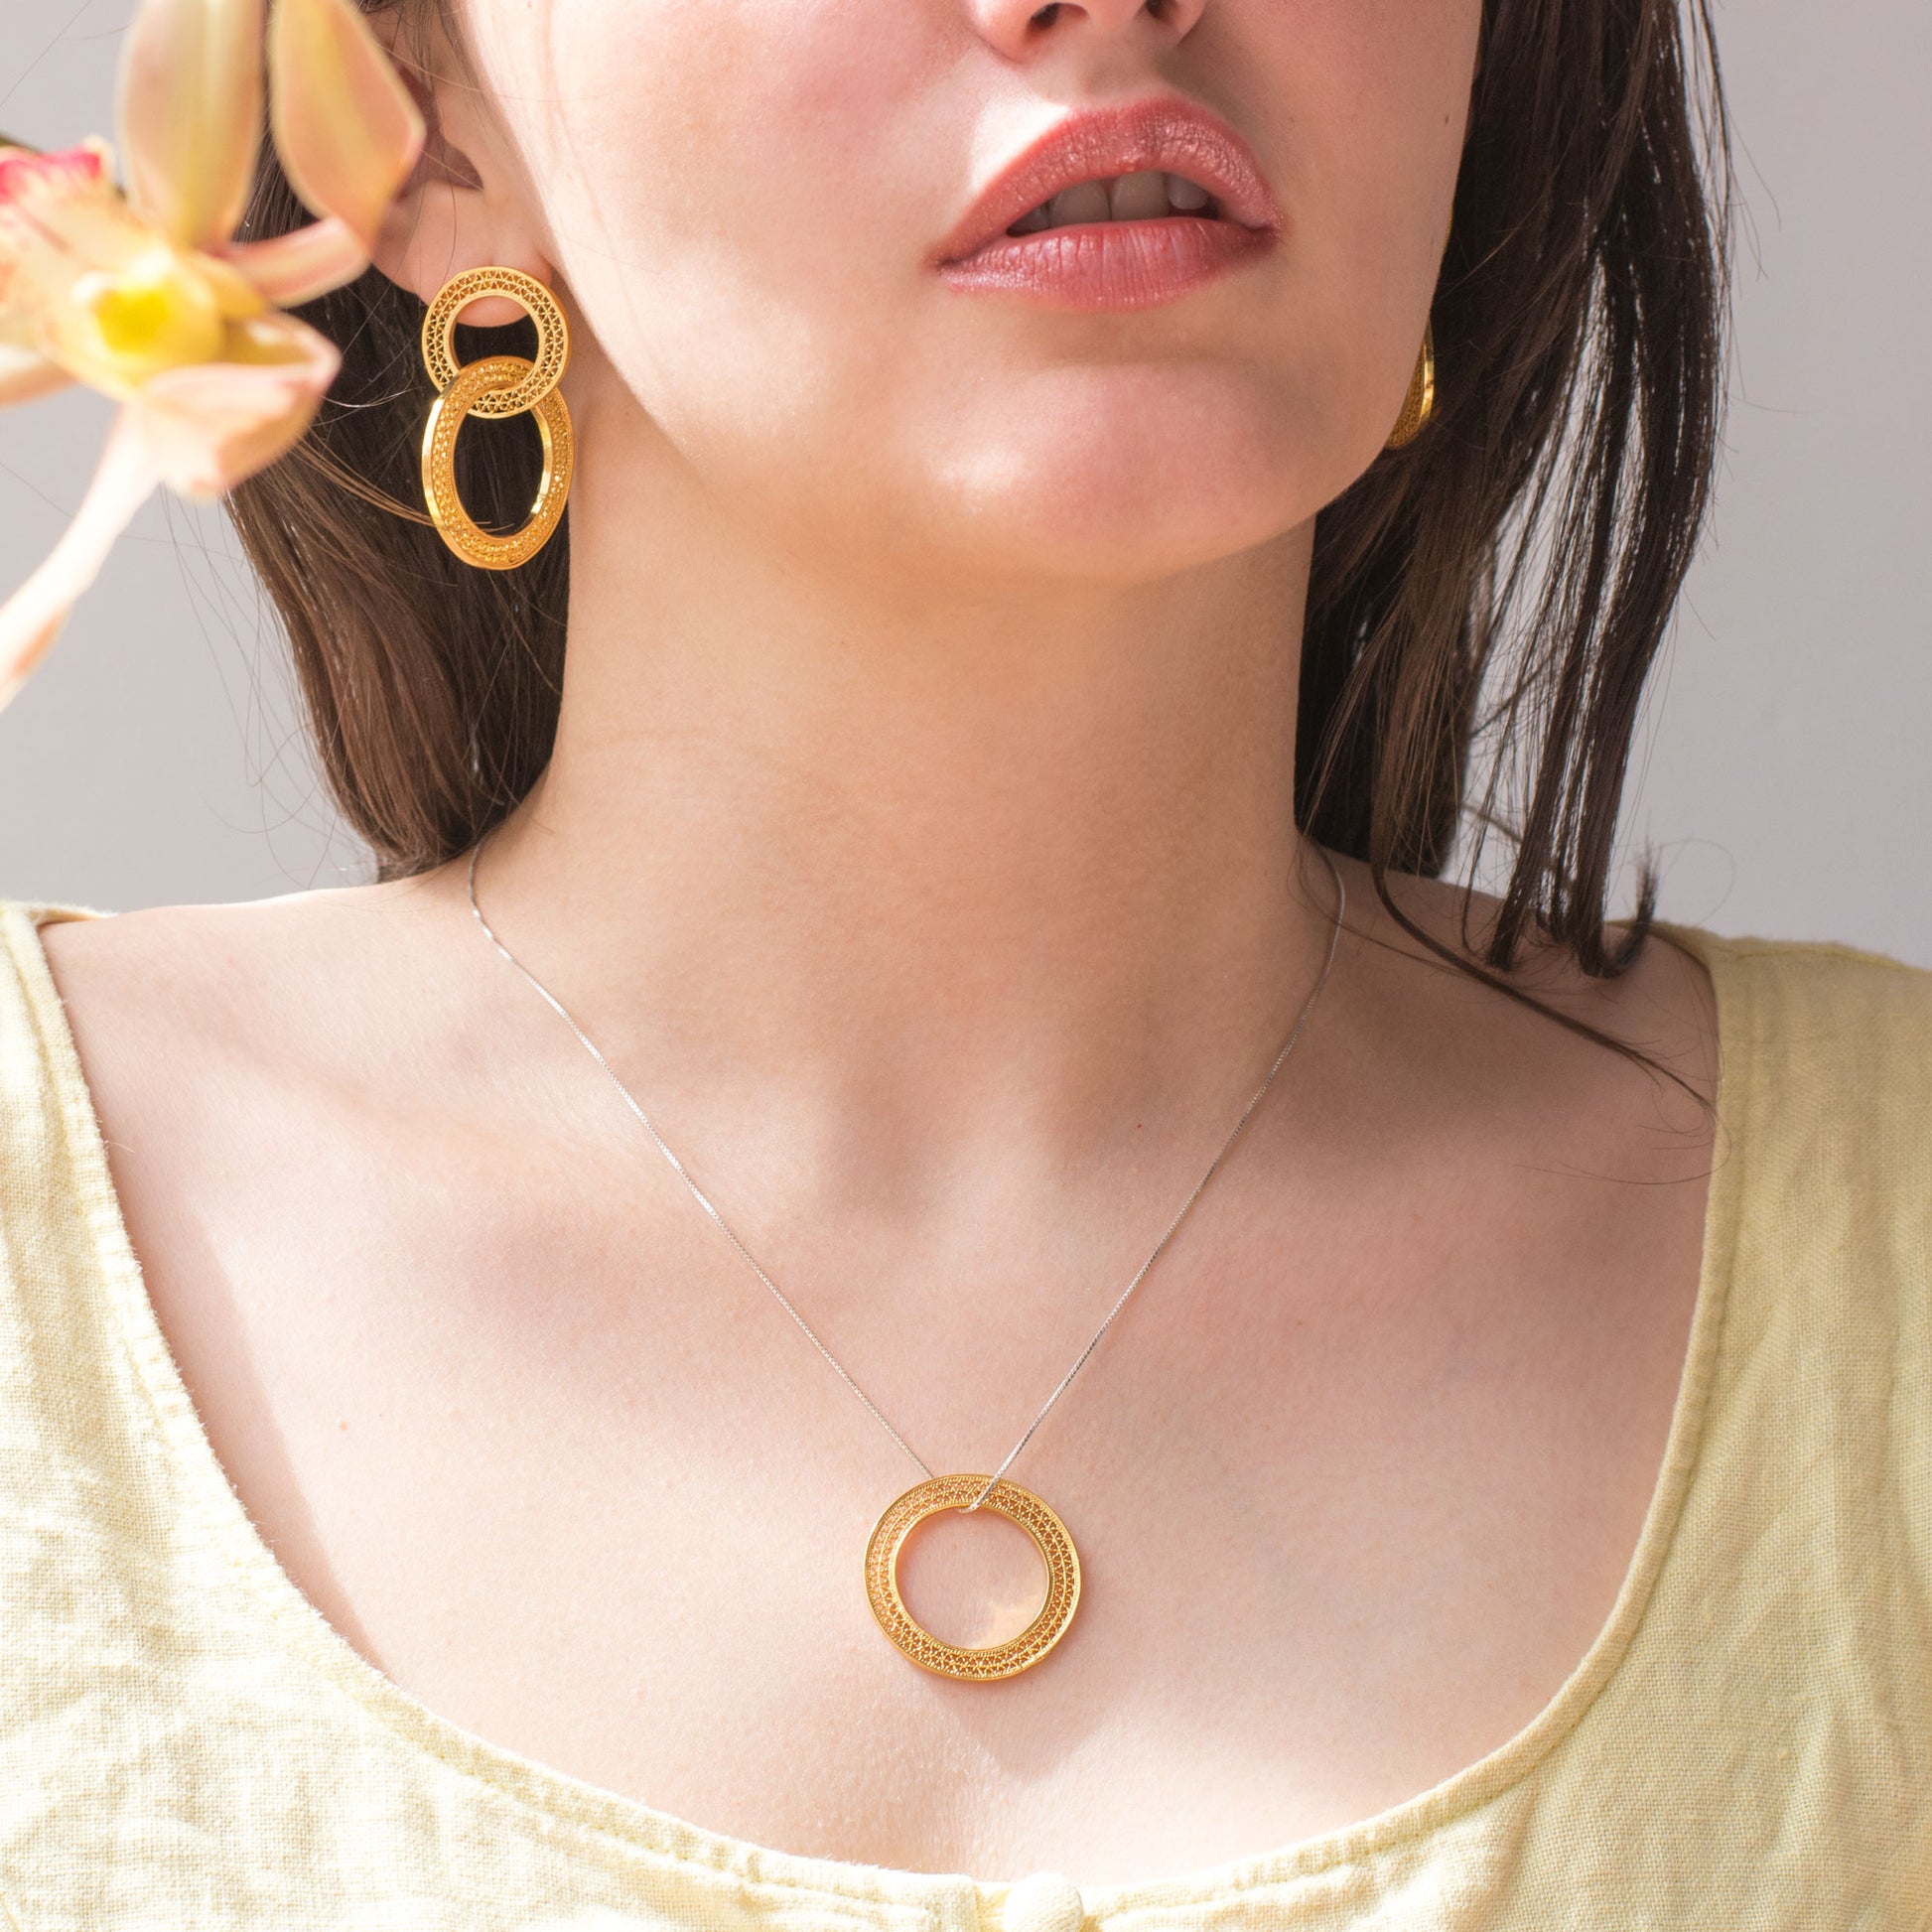 Gargantilla collar en filigrana momposina con aro de filigrana elaborada en plata 9.80 con chapado en oro de 24 kilates y oro rosa con protección en laca cataforética.